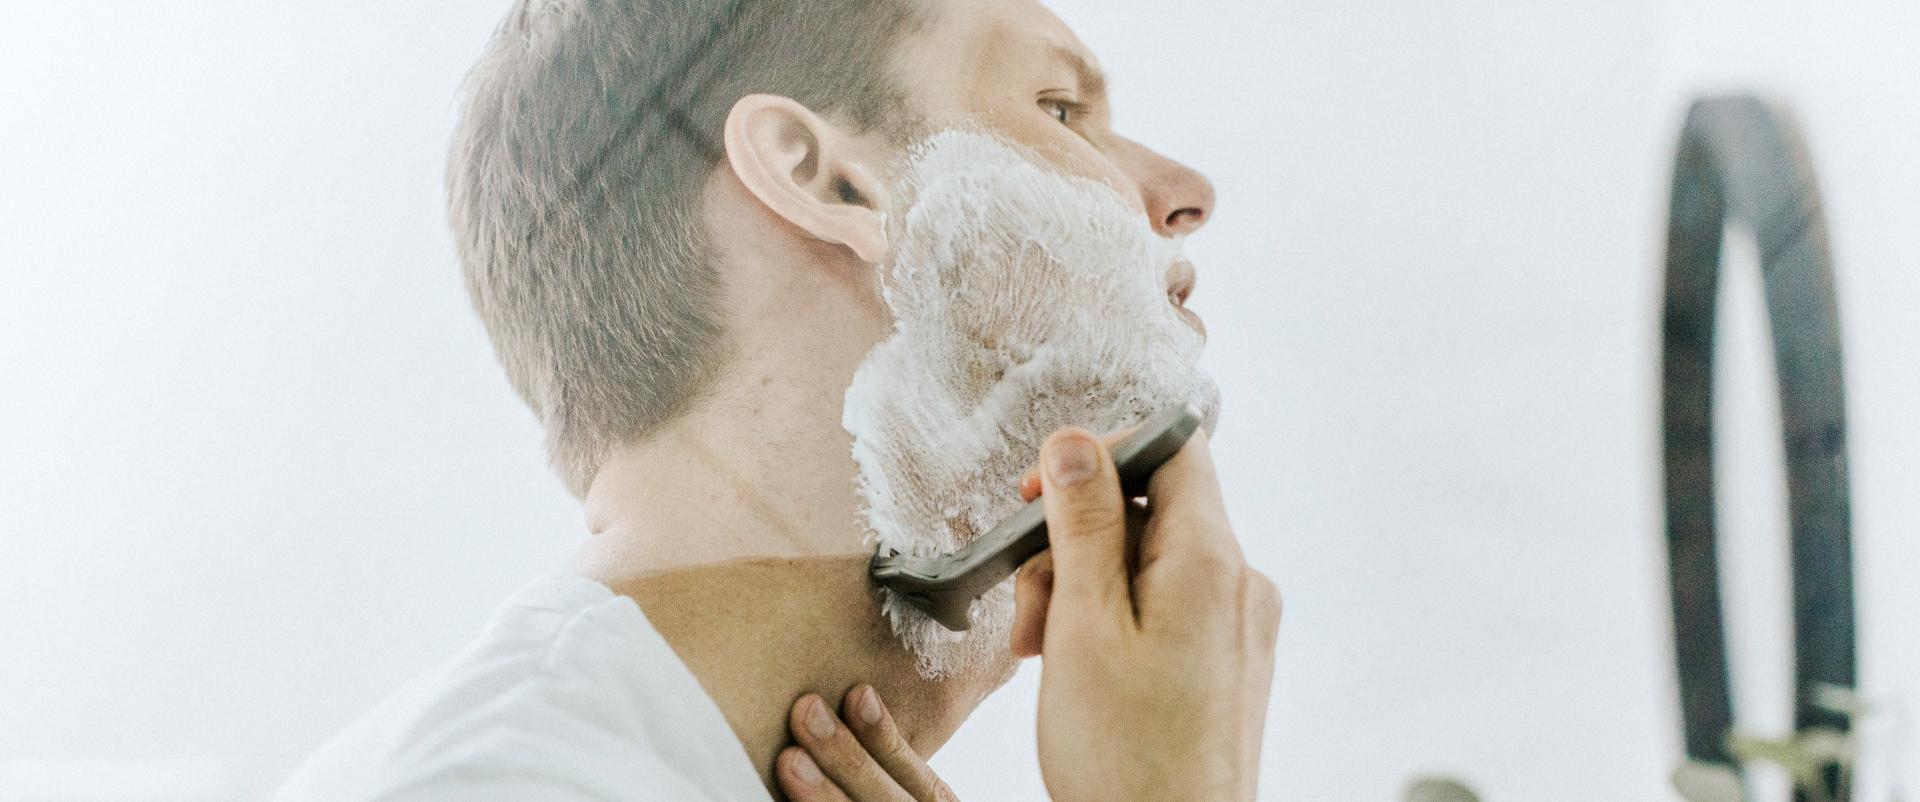 Kosmetyki dla mężczyzn, czyli jakiej pielęgnacji potrzebuje męska skóra